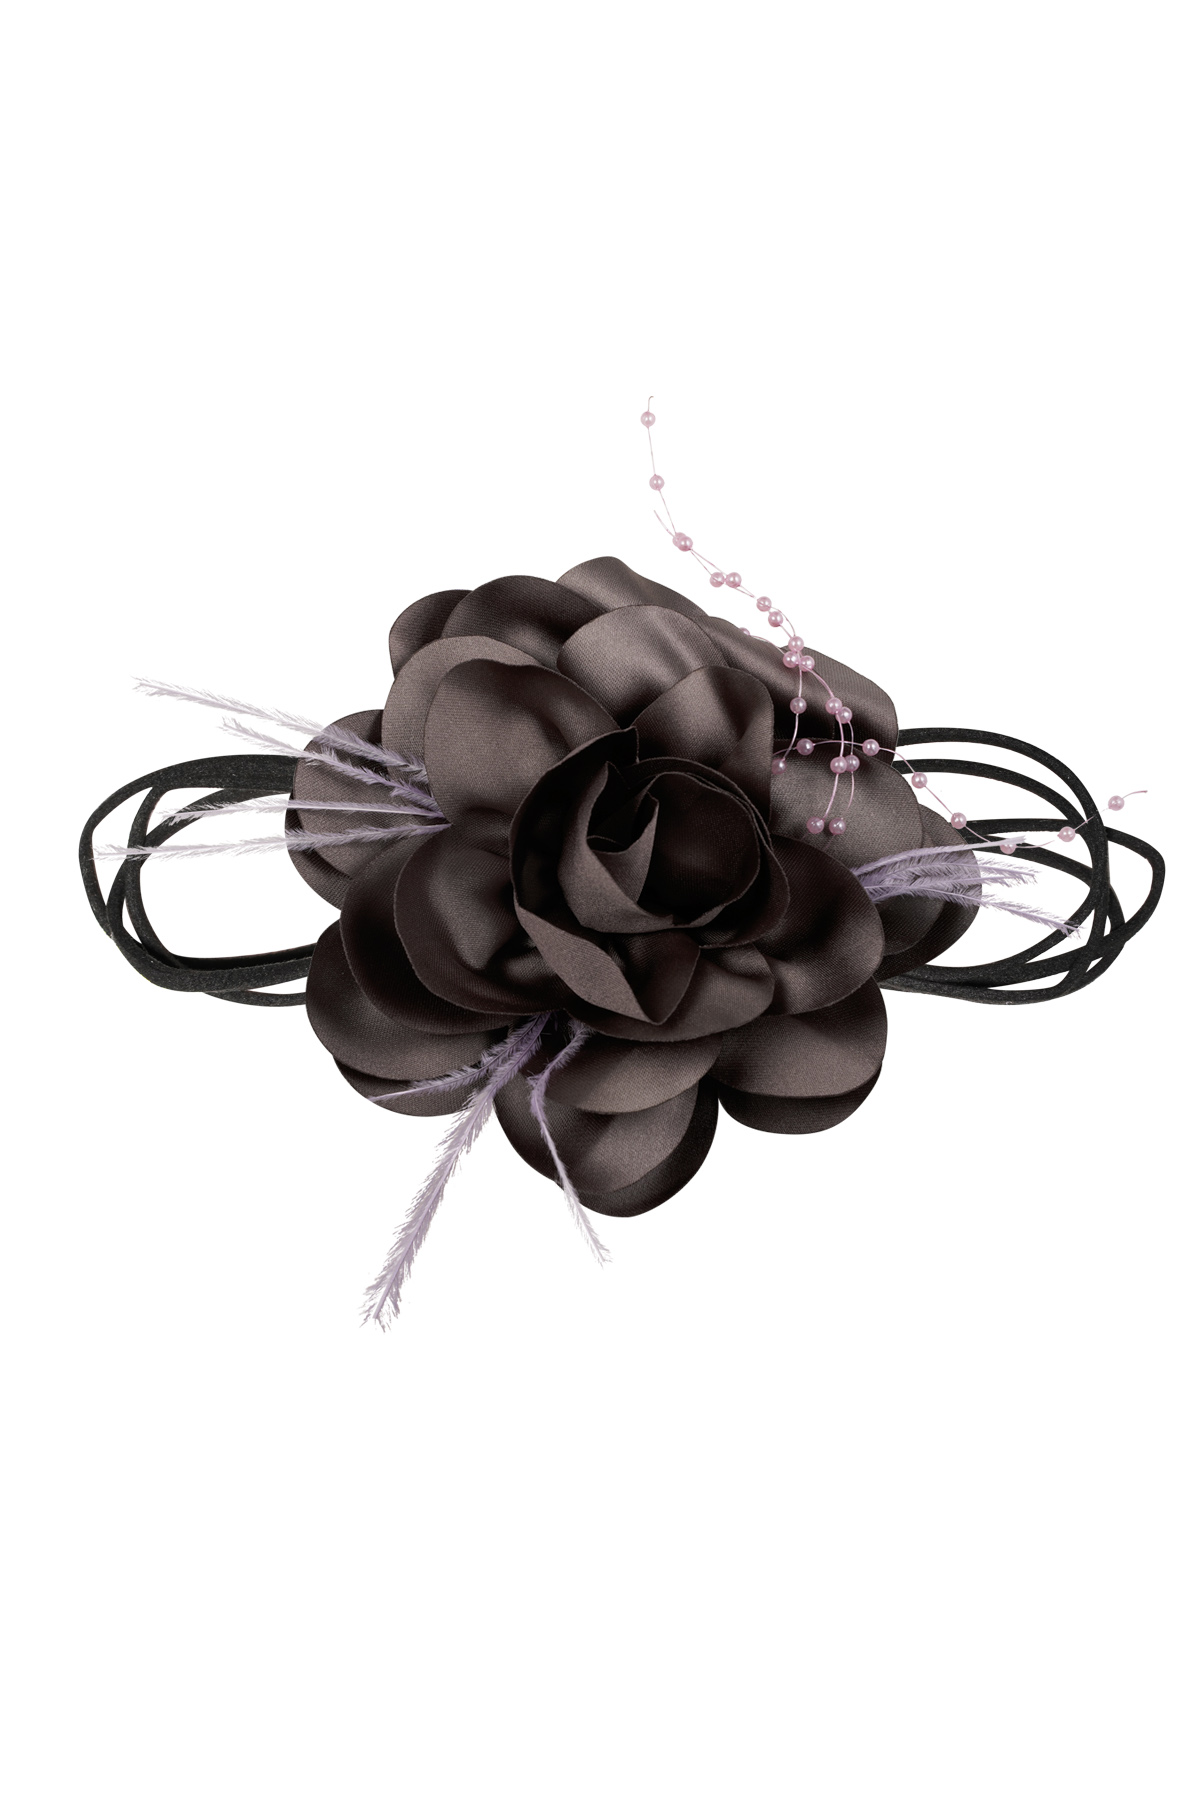 Halskettenband mit Blume und Perlen - dunkelbraun